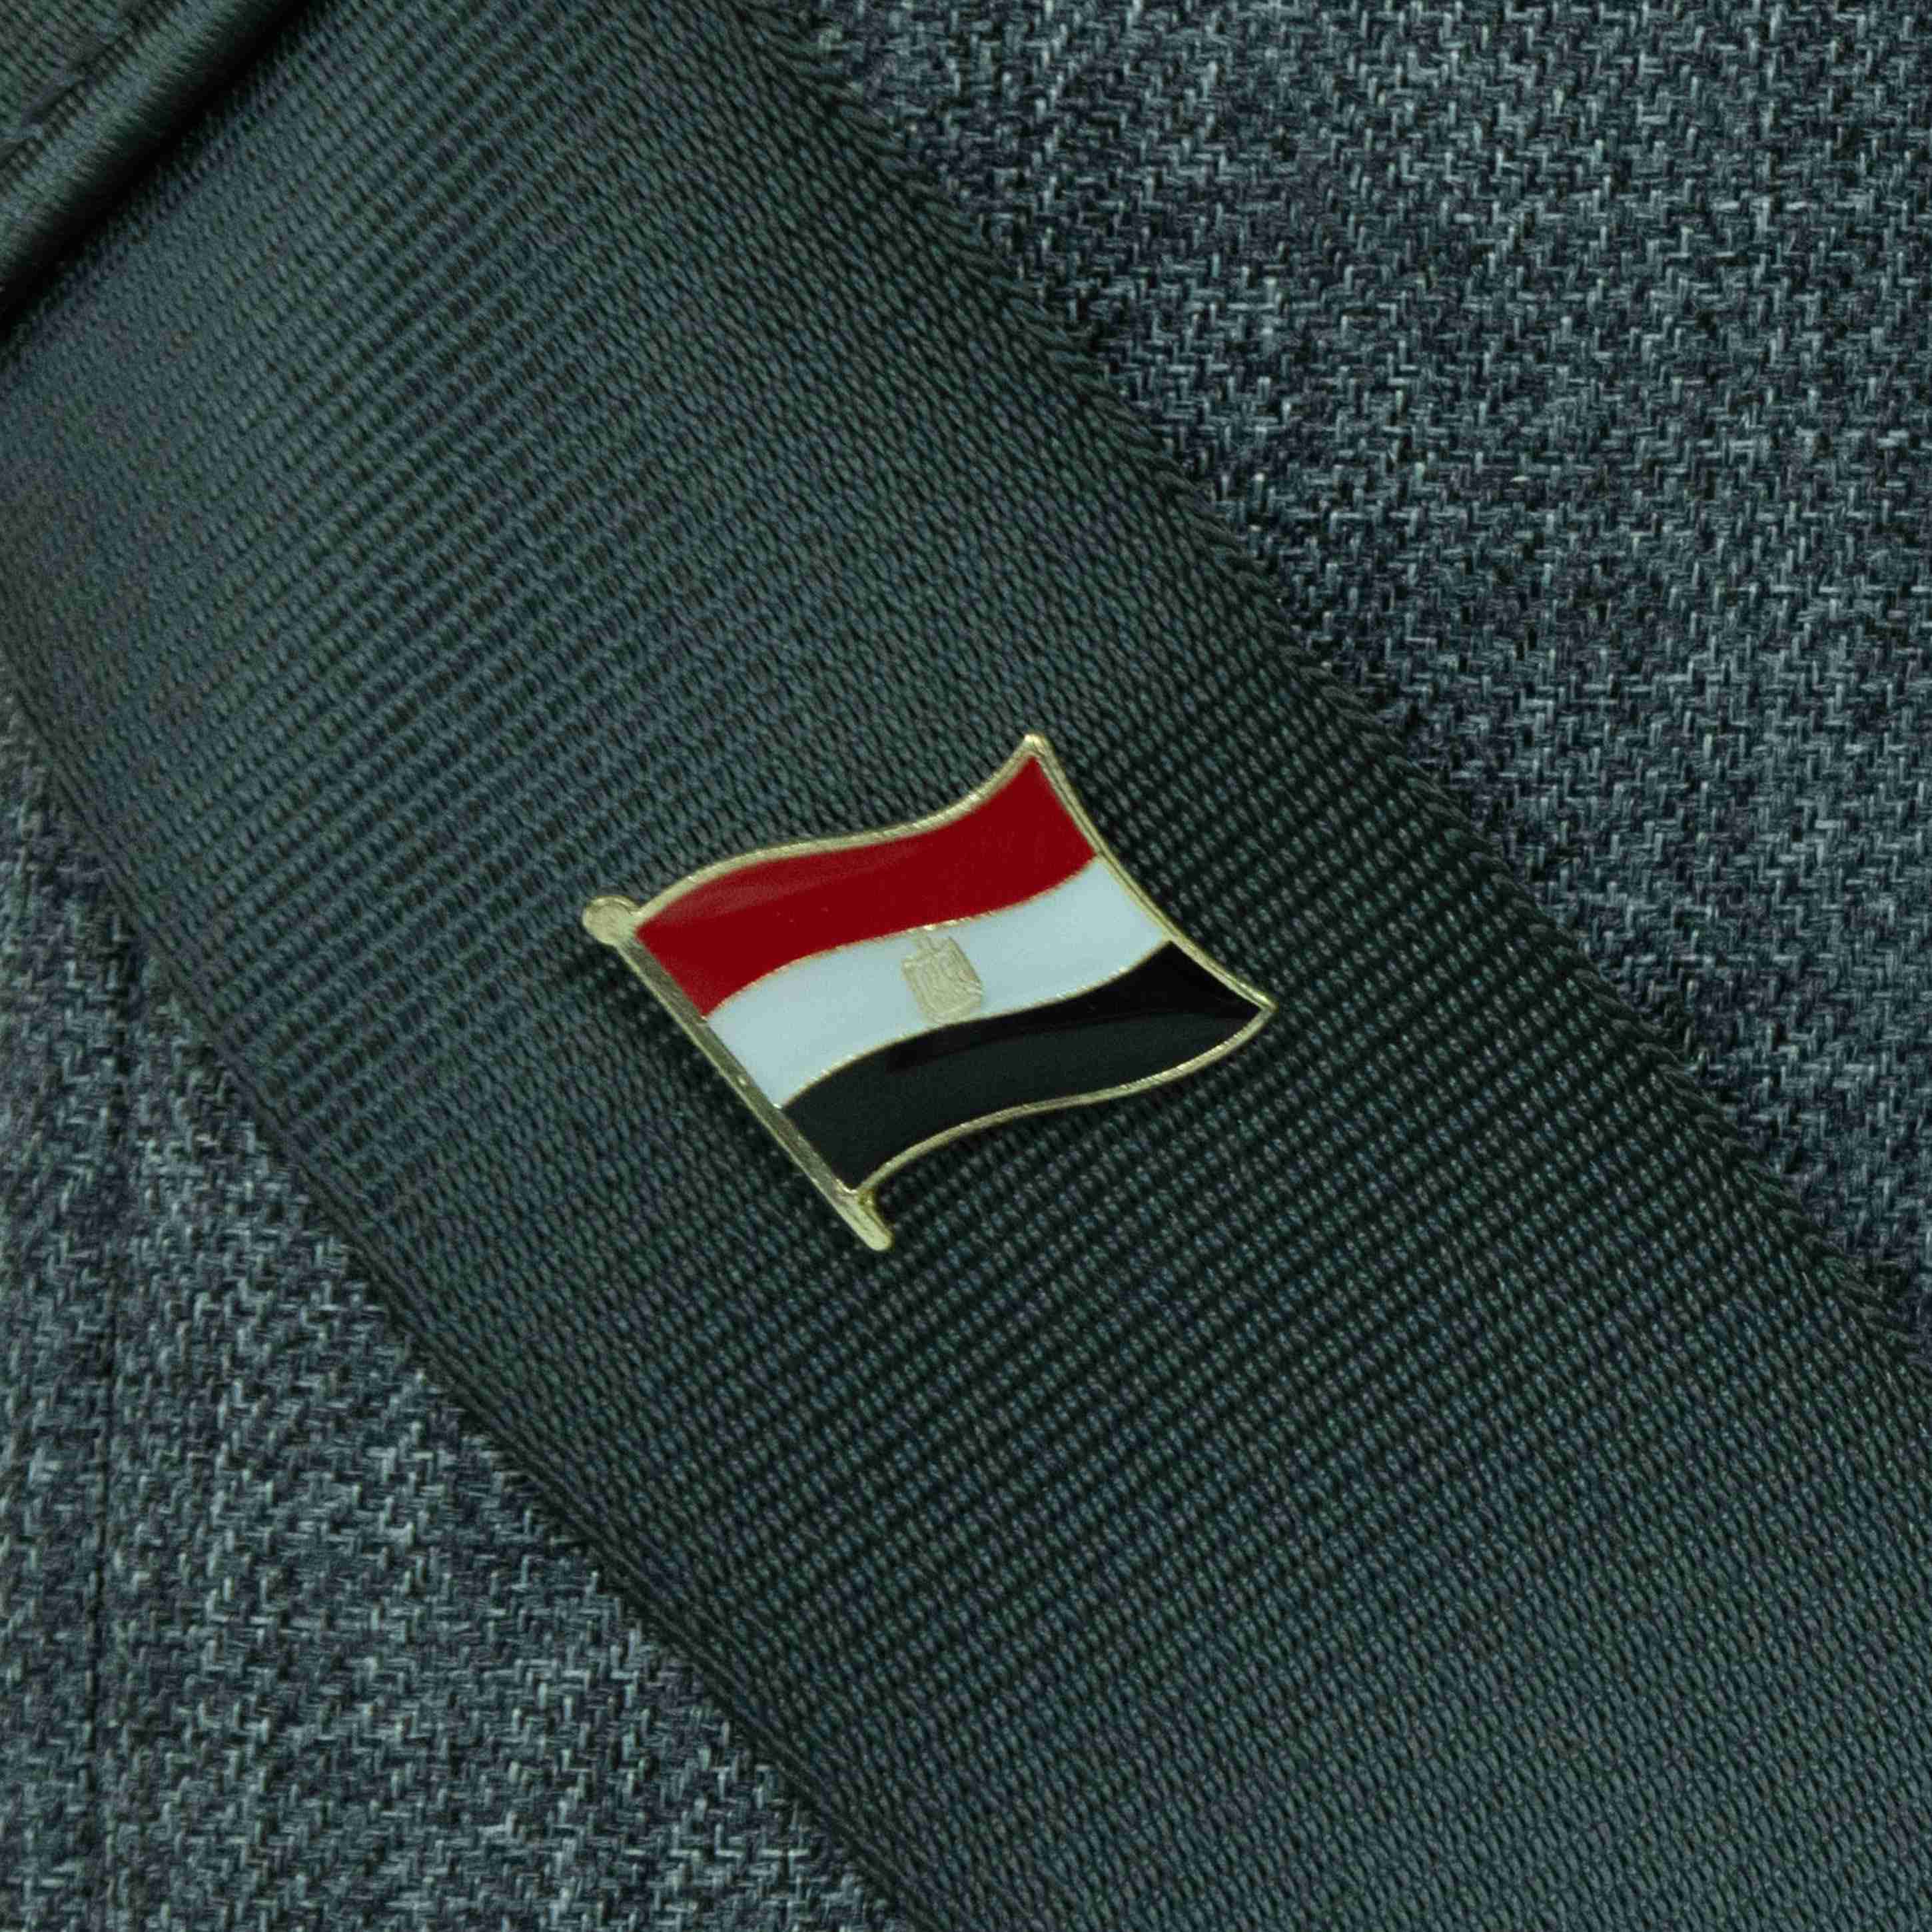 EGYPT 埃及國旗 國徽別針 金屬飾品 國旗別針 國徽胸章 國旗胸針 精美 遊學